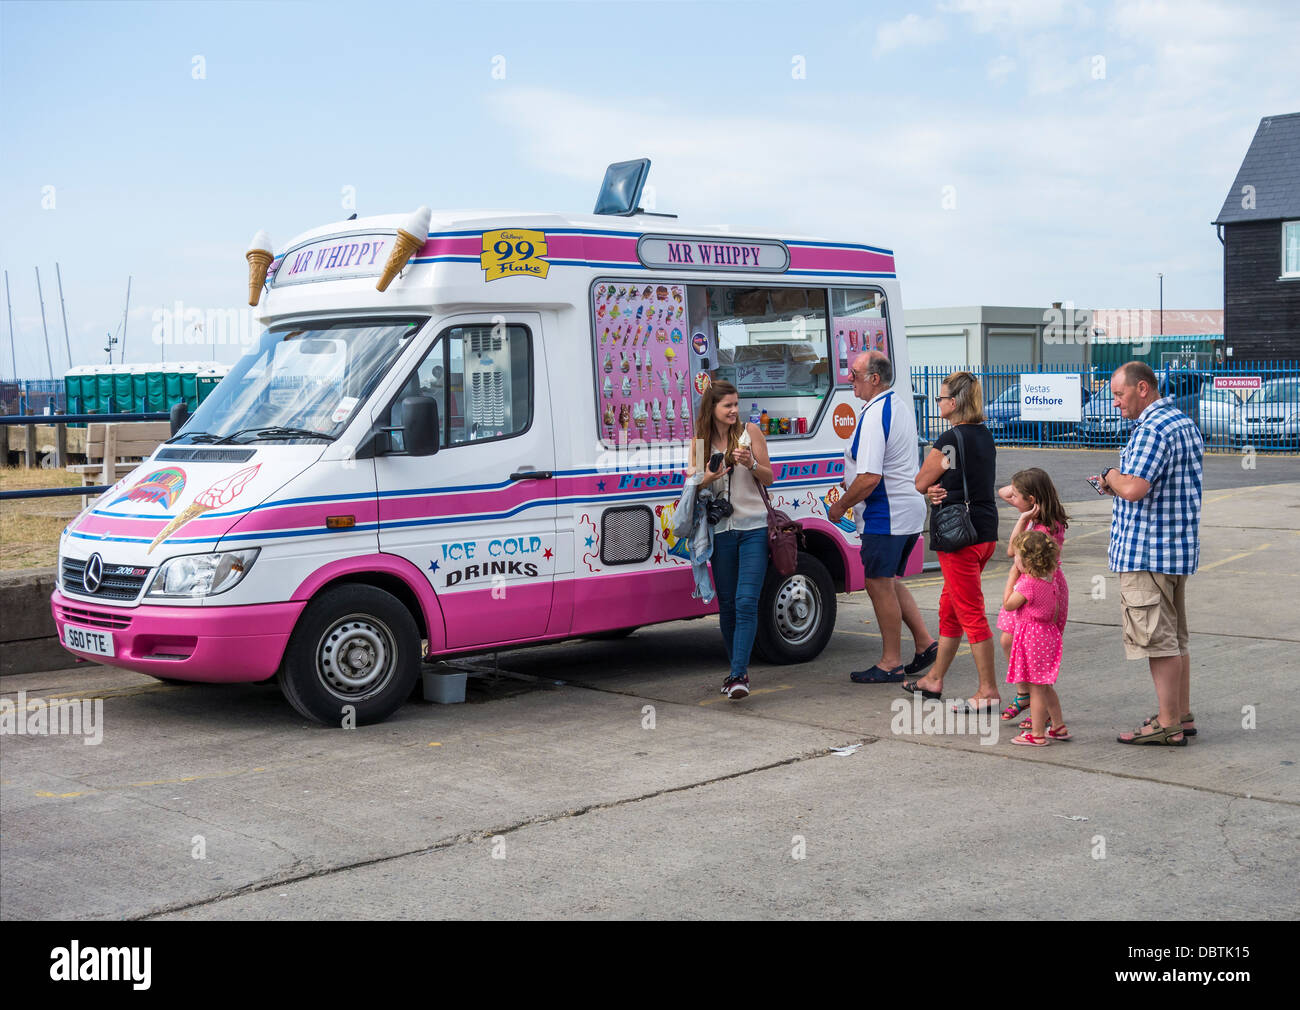 Ice Cream Van Mr Whippy 99 Flakes Queue for Ices Stock Photo